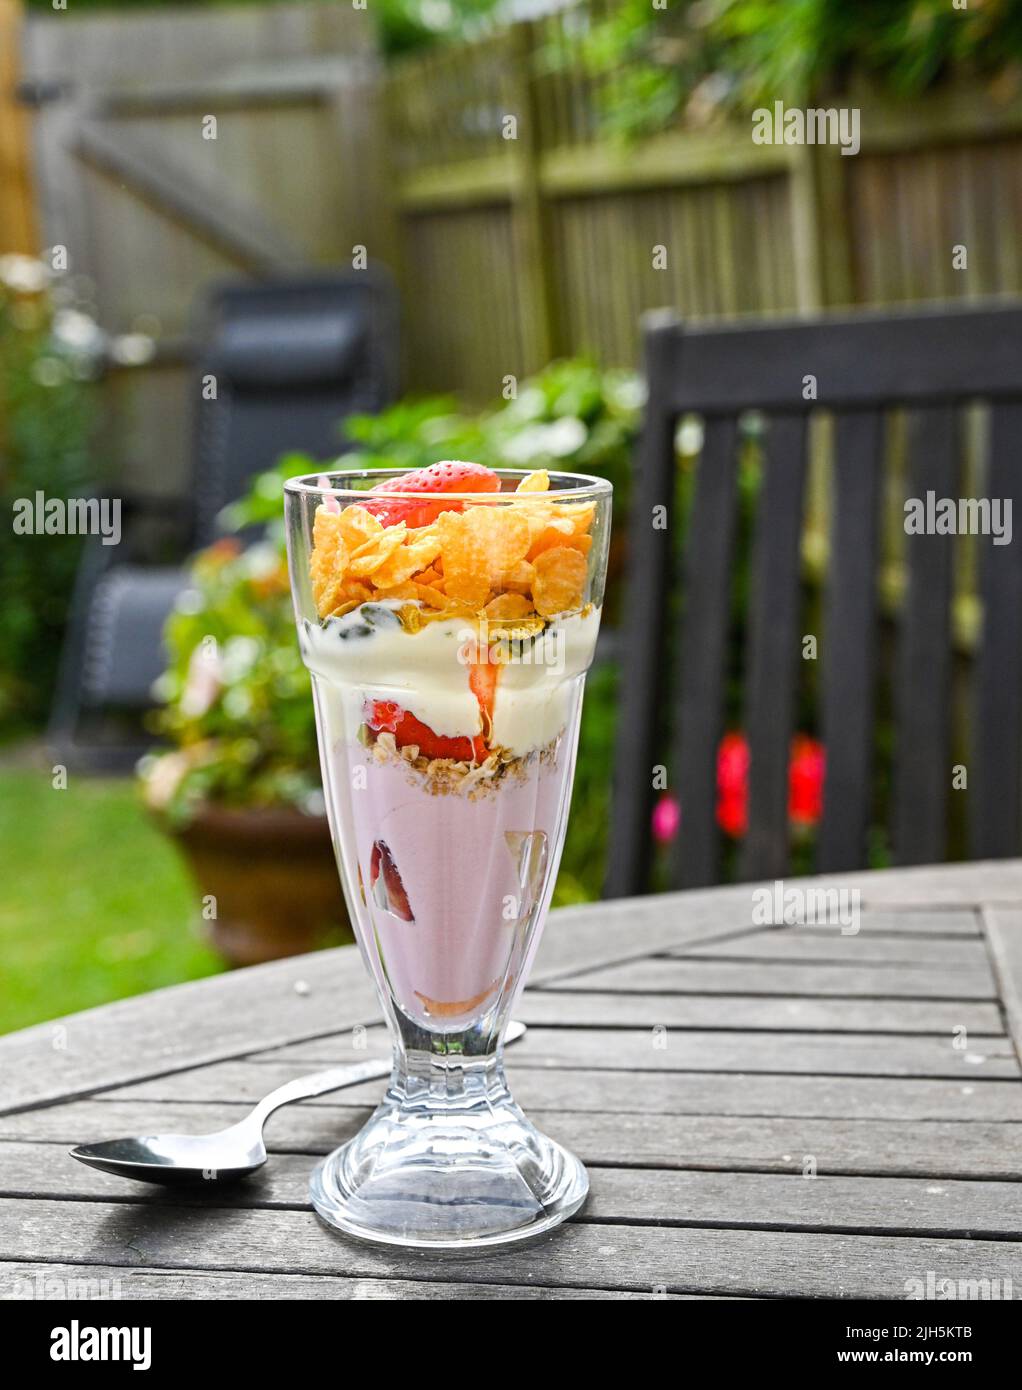 Saludable desayuno de verano de yogur, copos de granola y fresas frescas en el Reino Unido Foto de stock